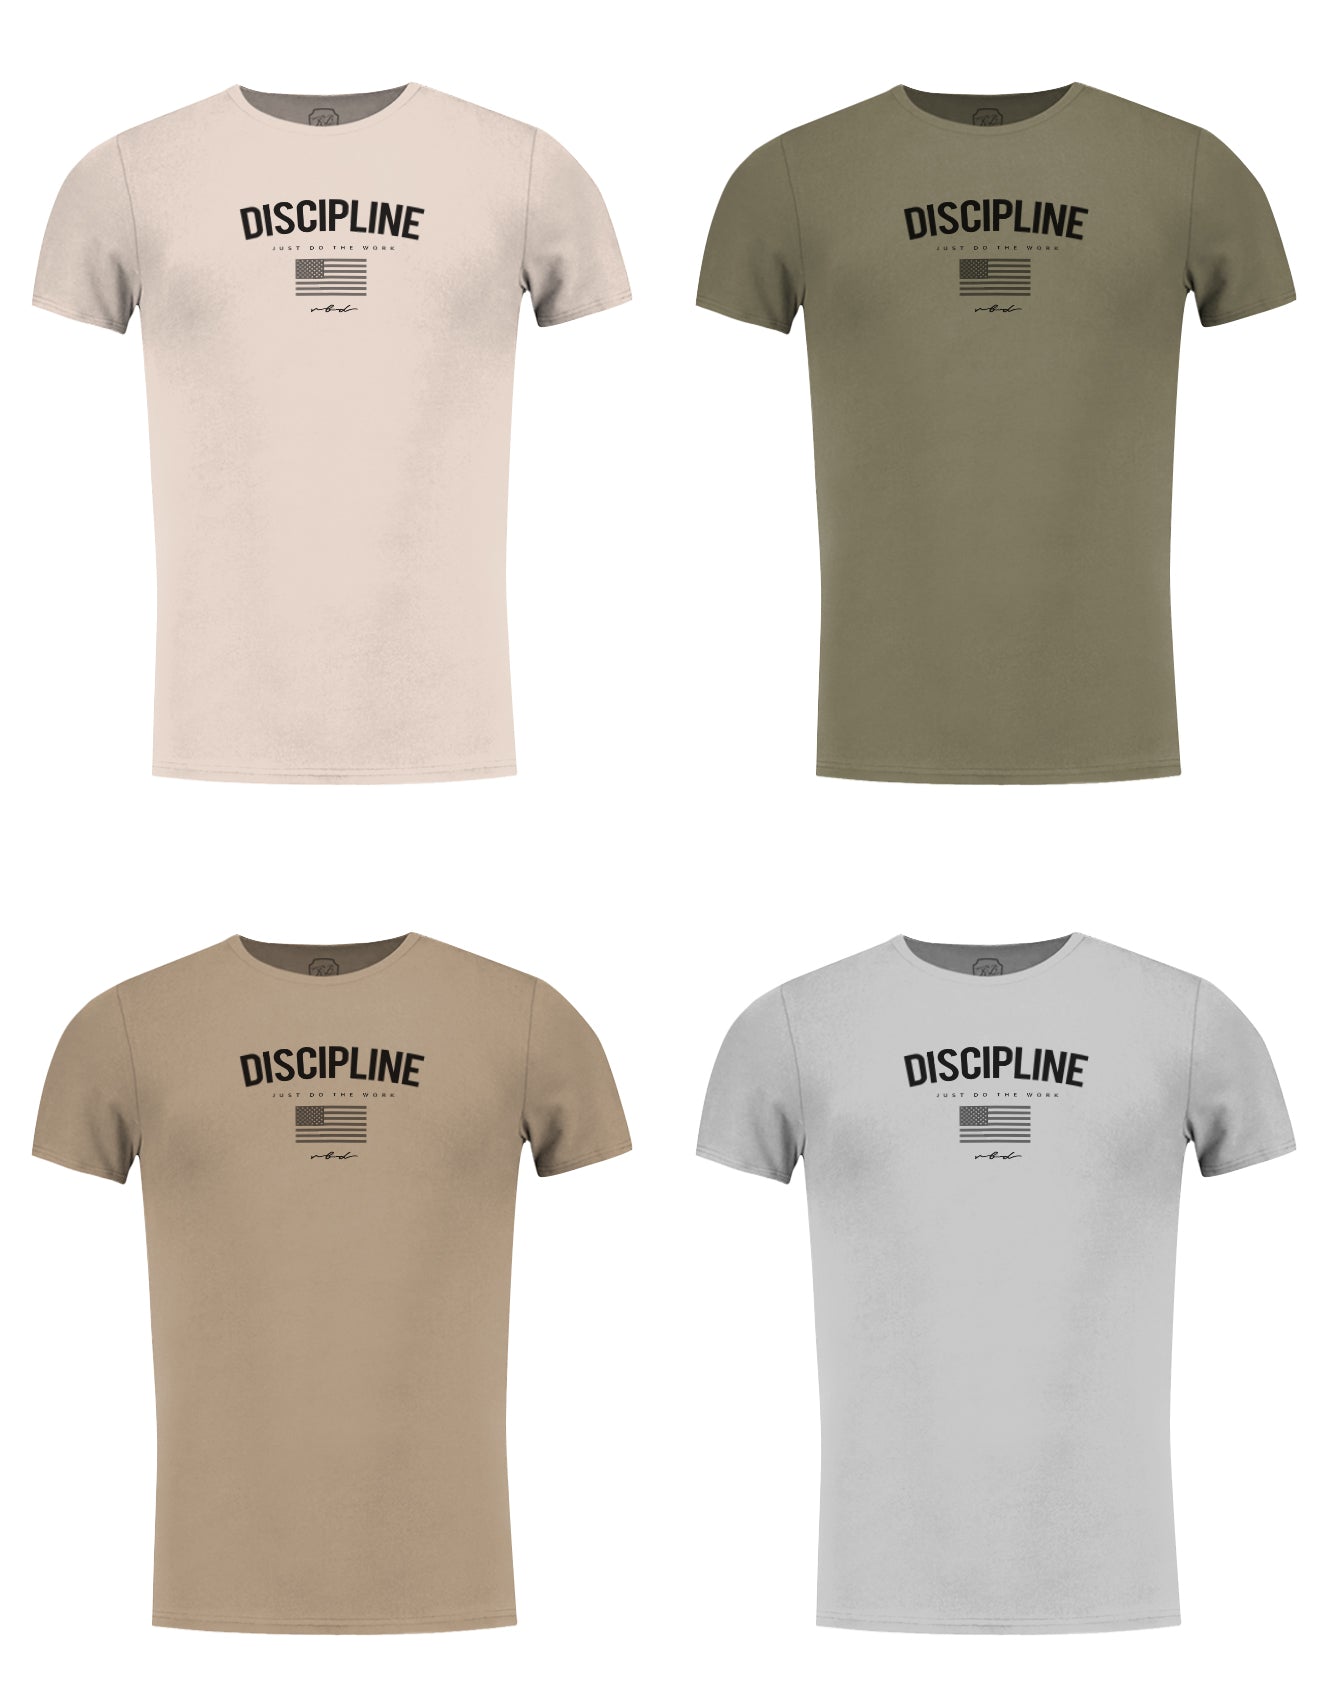 Men's T-shirt "Discipline" Khaki Gray Beige / Color Option / MD933